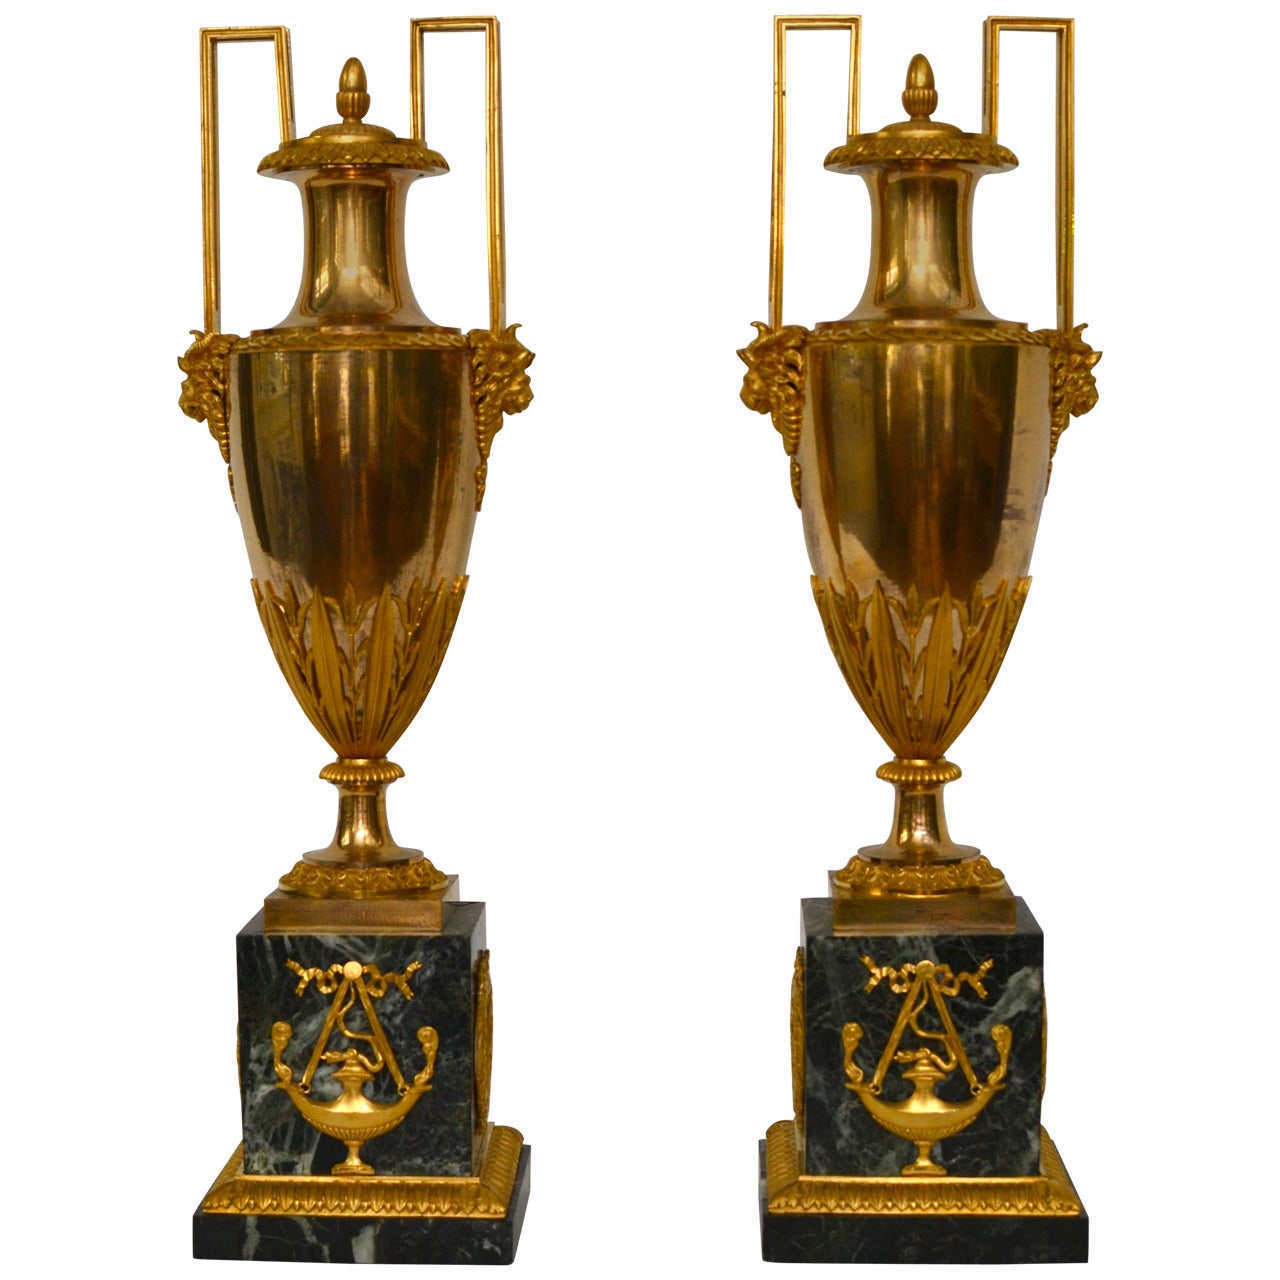 Fine Pair of Empire Gilt Bronze and Marble Vases, Paris, circa 1810